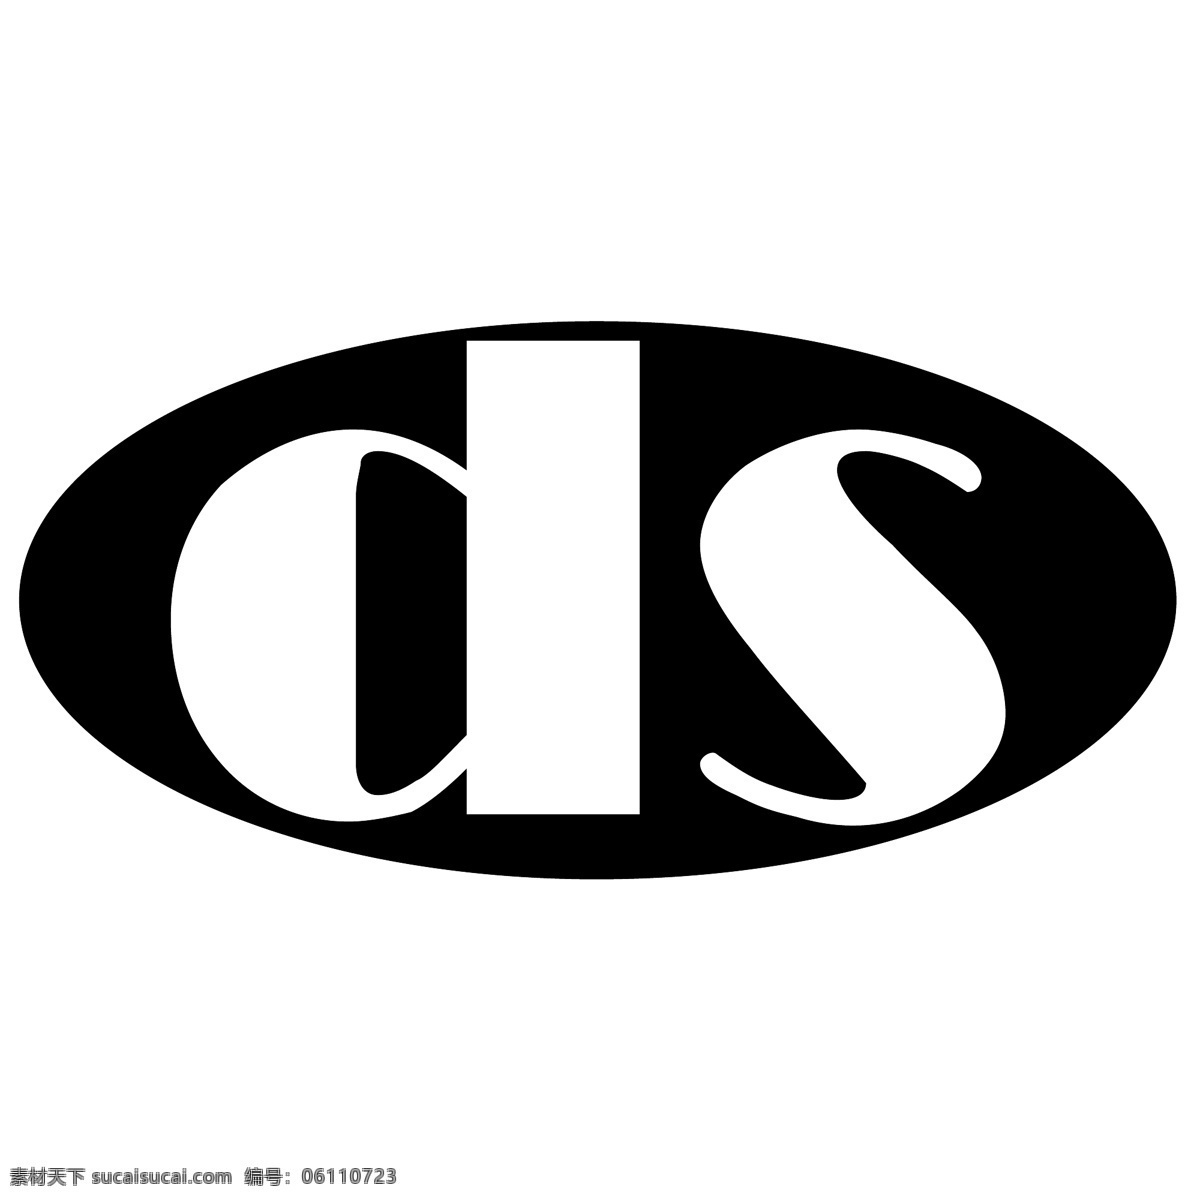 ds 矢量标志下载 免费矢量标识 商标 品牌标识 标识 矢量 免费 品牌 公司 白色